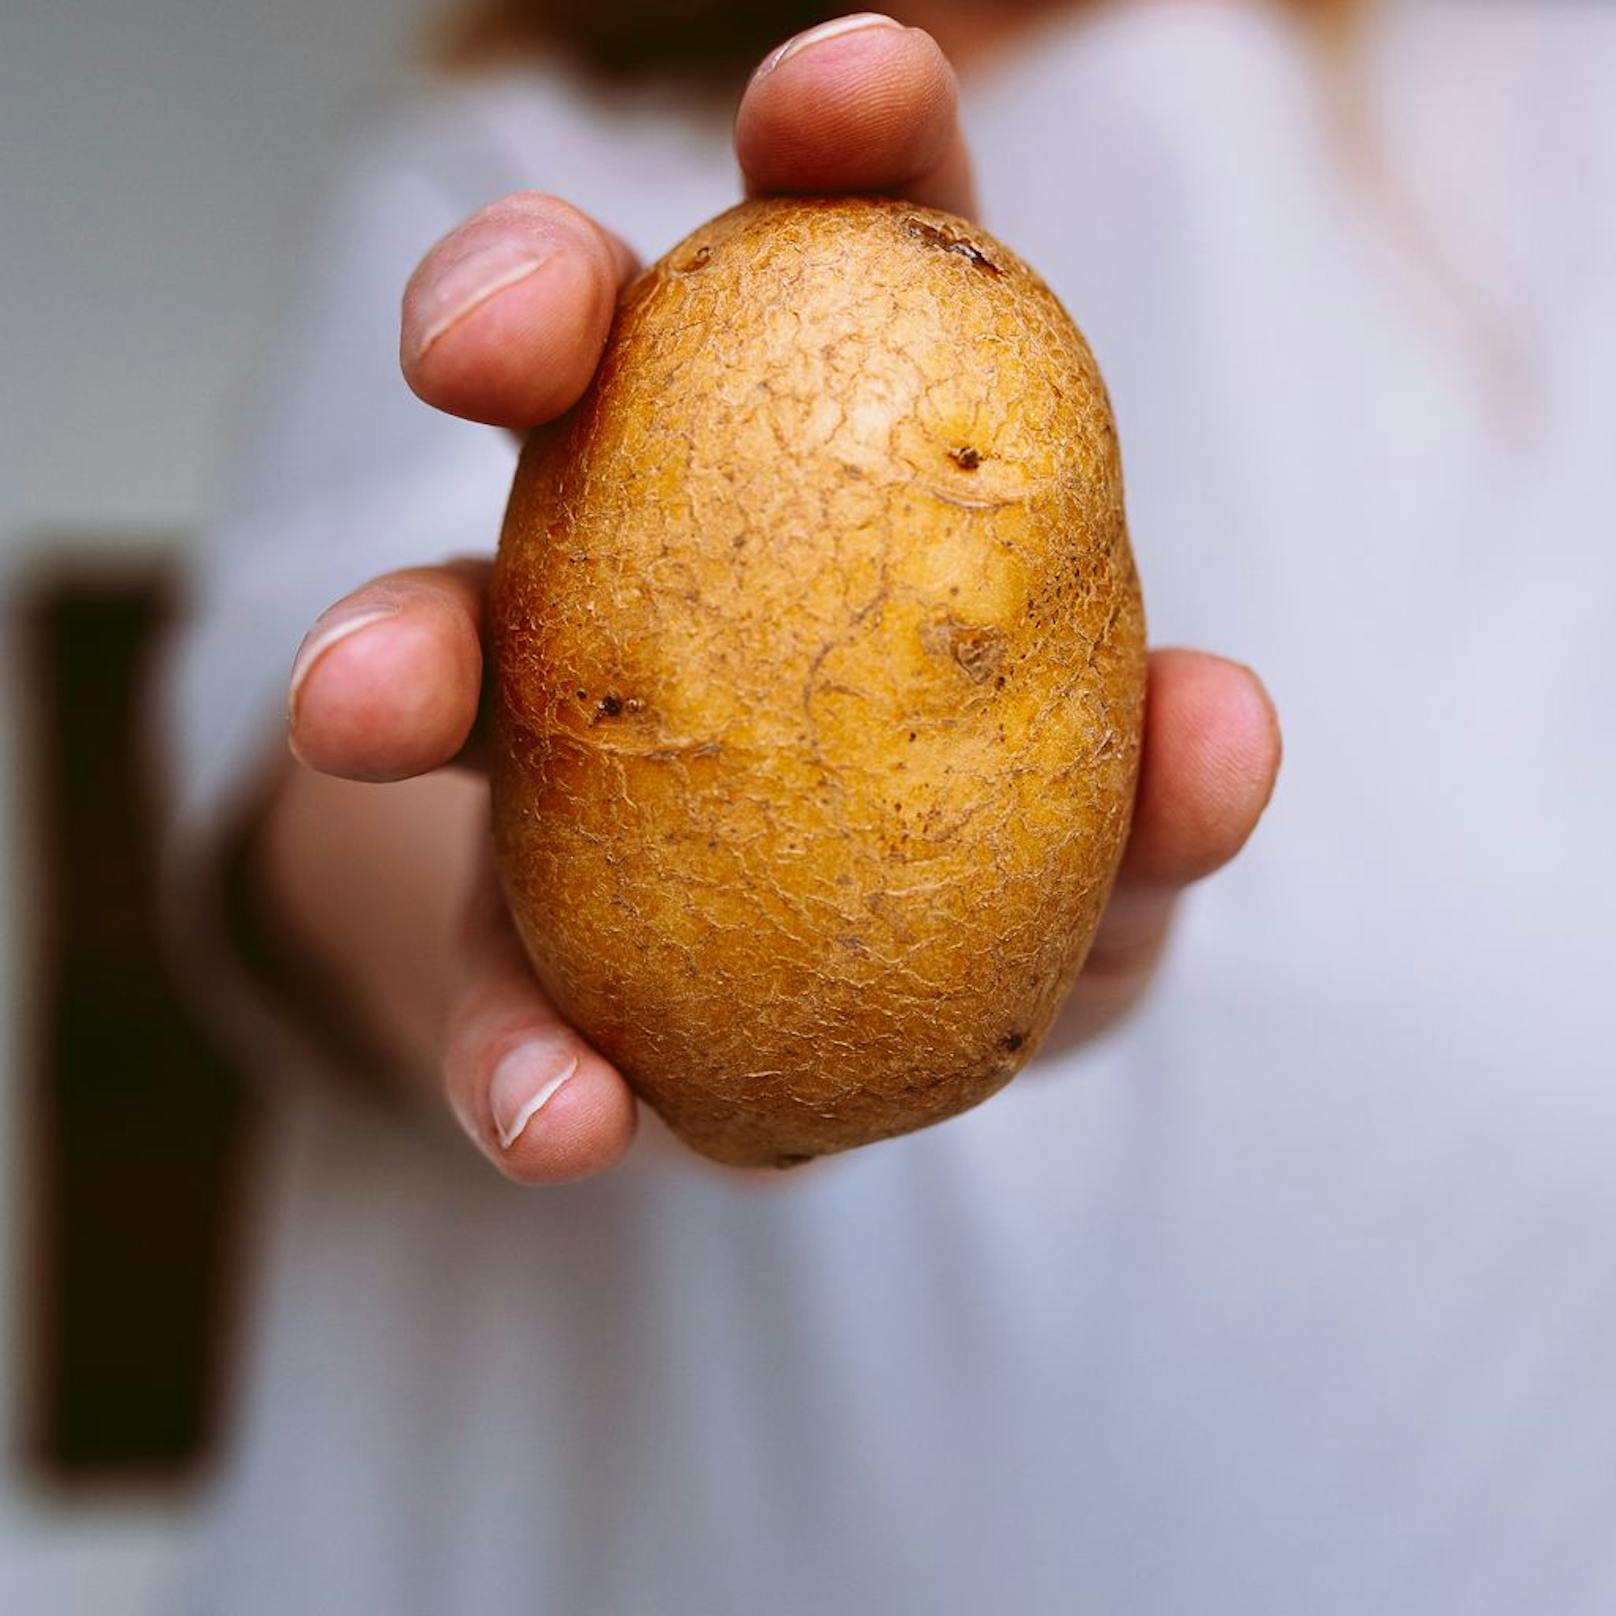 Um die höchste Konzentration von deinen Lebensmitteln beizubehalten solltest du die schützende Haut nur dann schälen, wenn es nötig ist. Kartoffeln kannst du zum Beispiel nach dem Kochen schälen, da sich somit der Vitamin-C-Verlust halbieren lässt. 